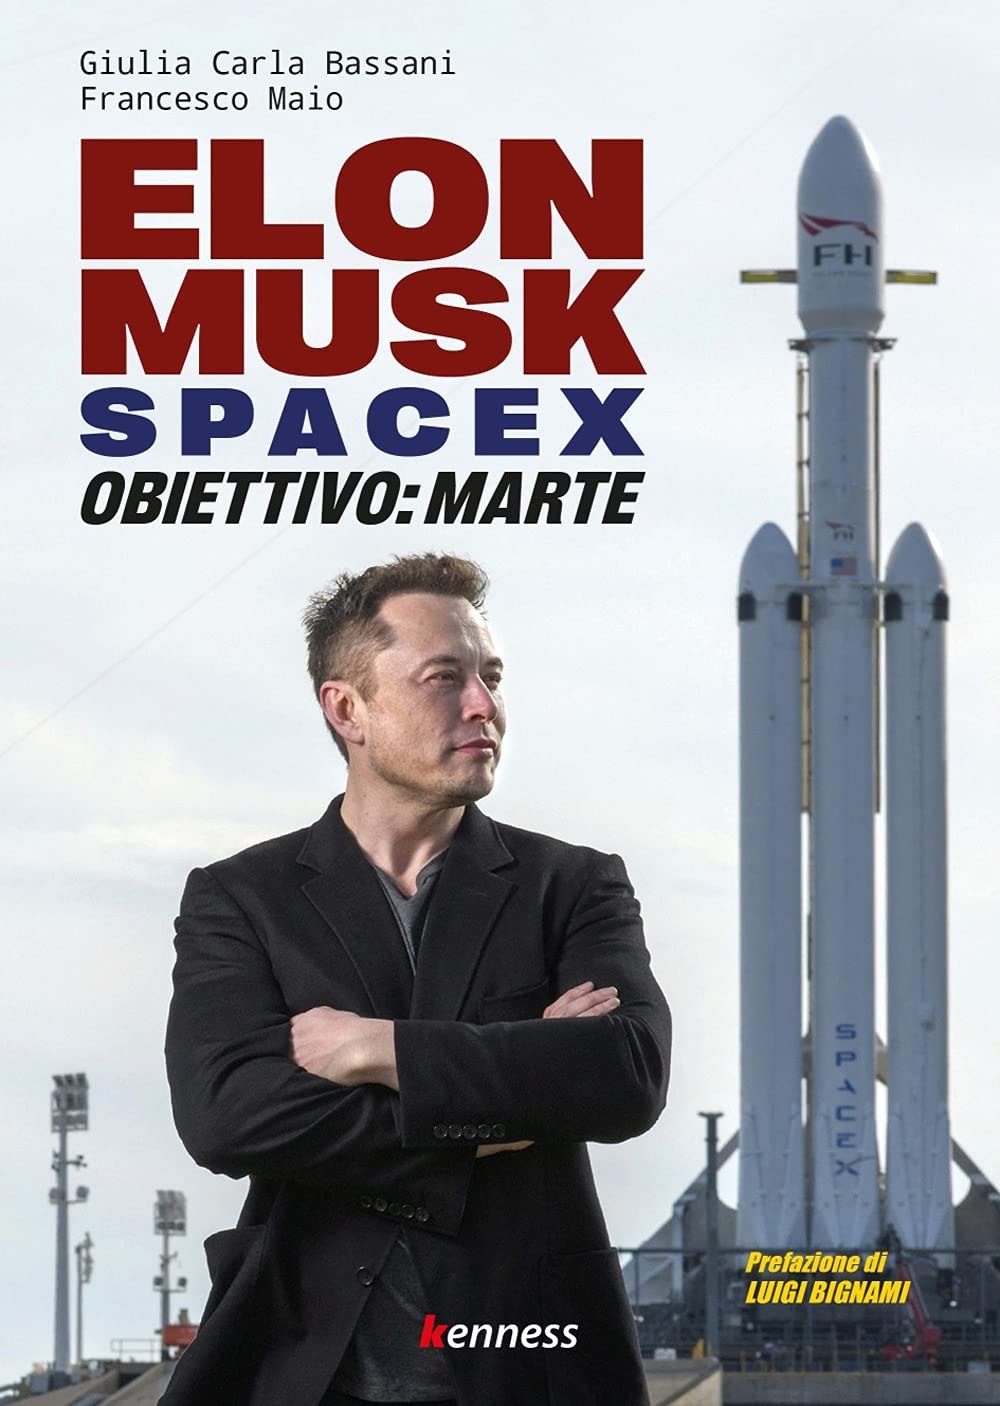 Elon Musk e Space X. Missione: Marte.